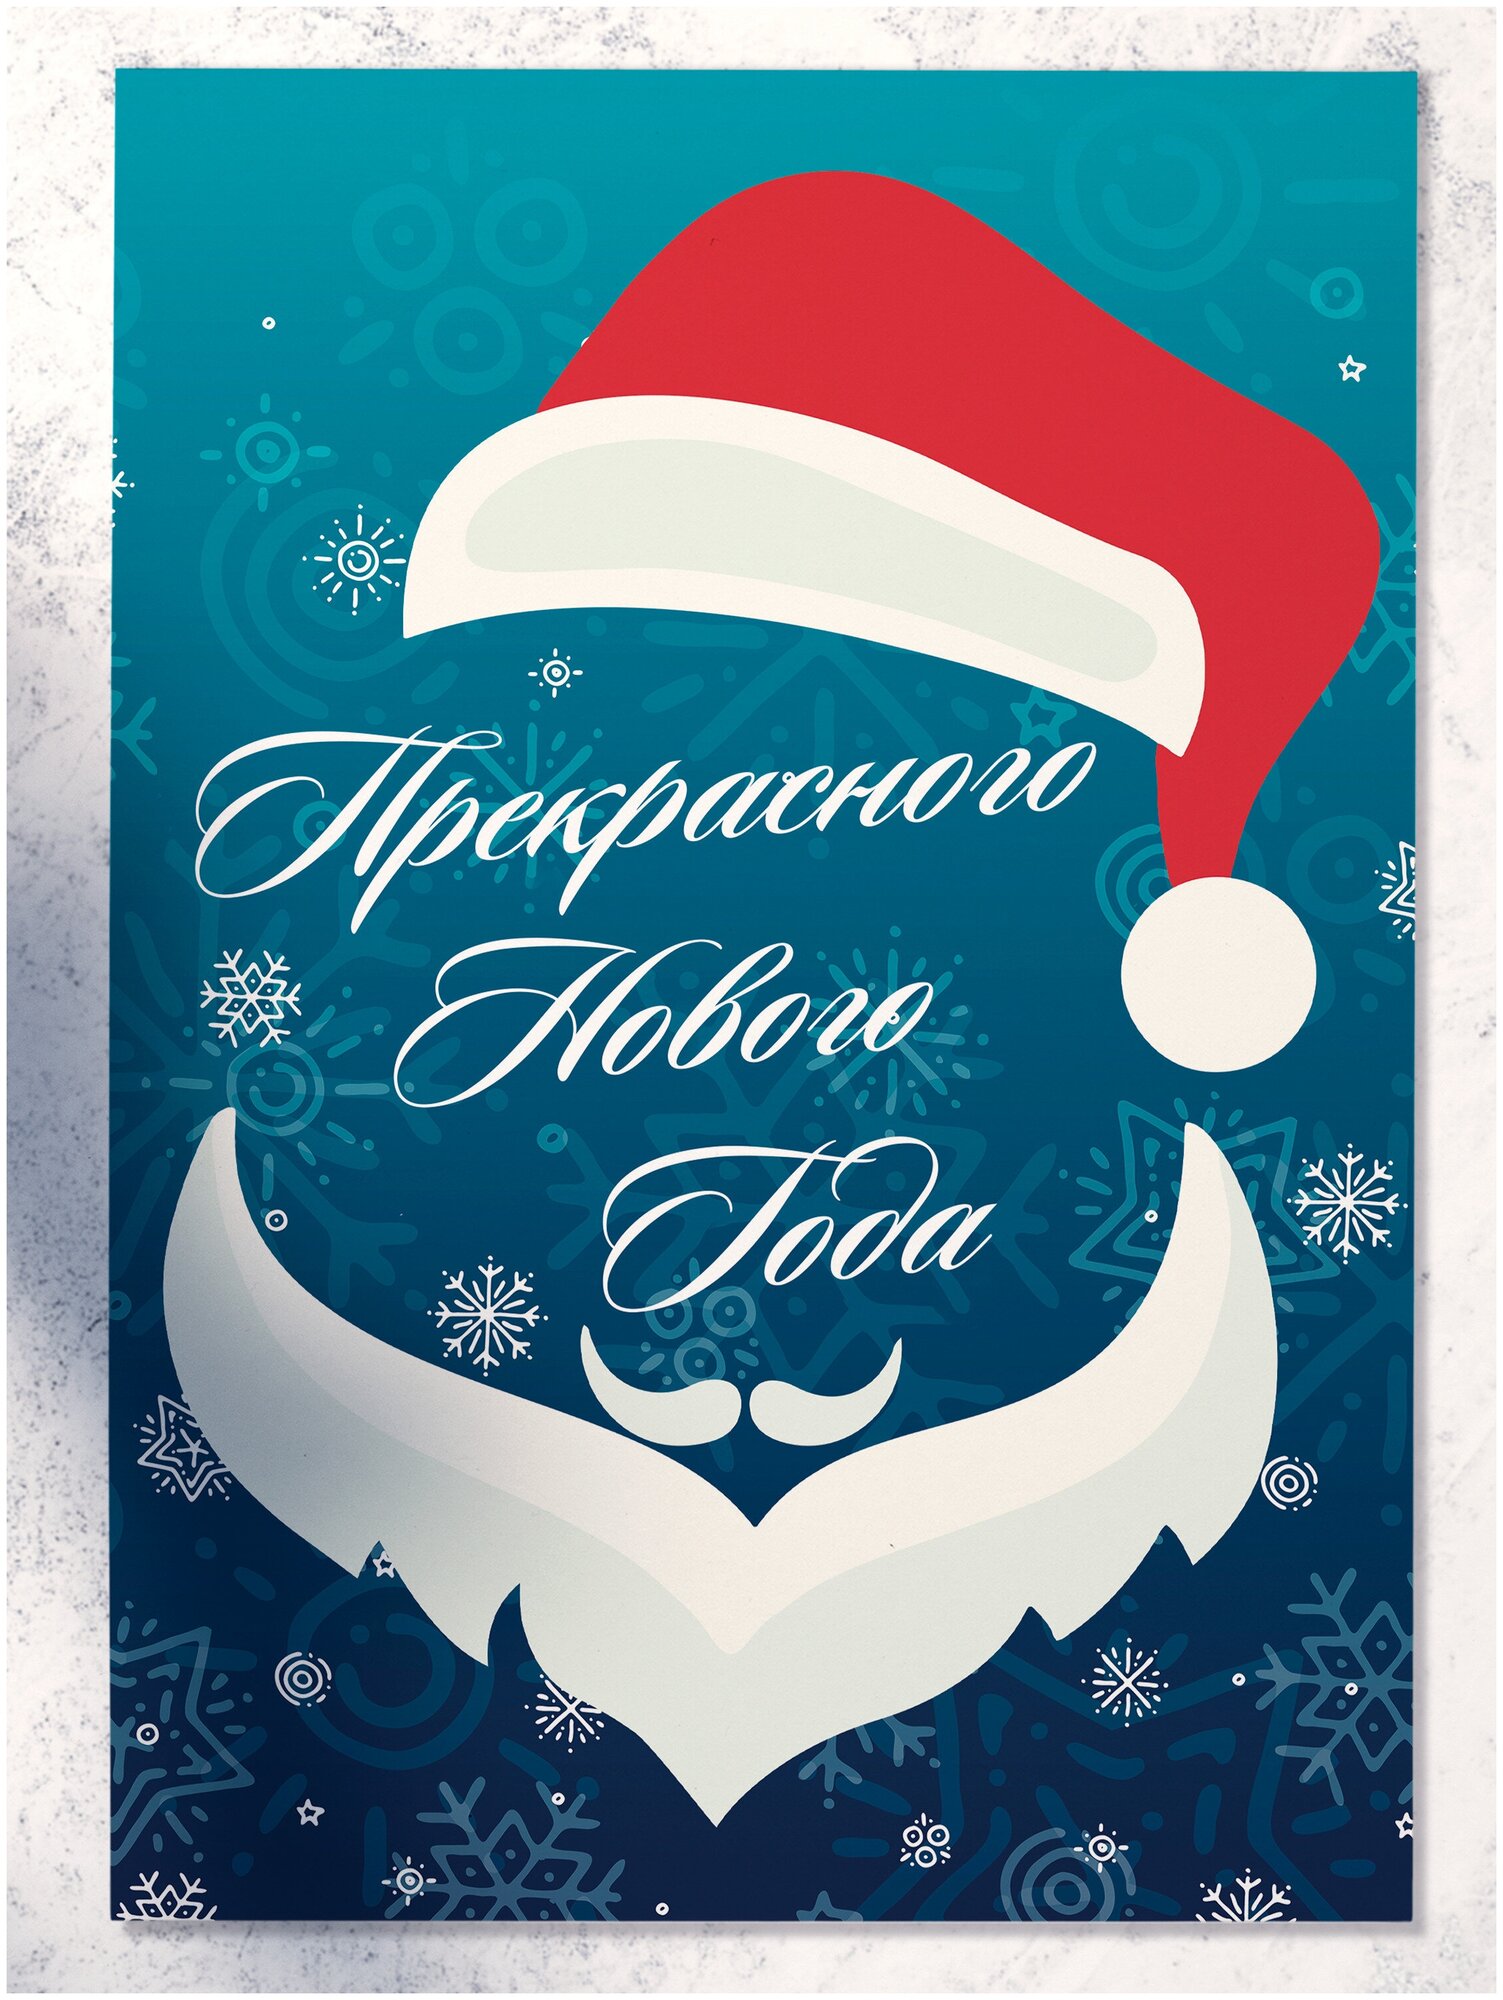 Прекрасного Нового Года' - большая праздничная новогодняя открытка Аурасо размер 210x148 мм